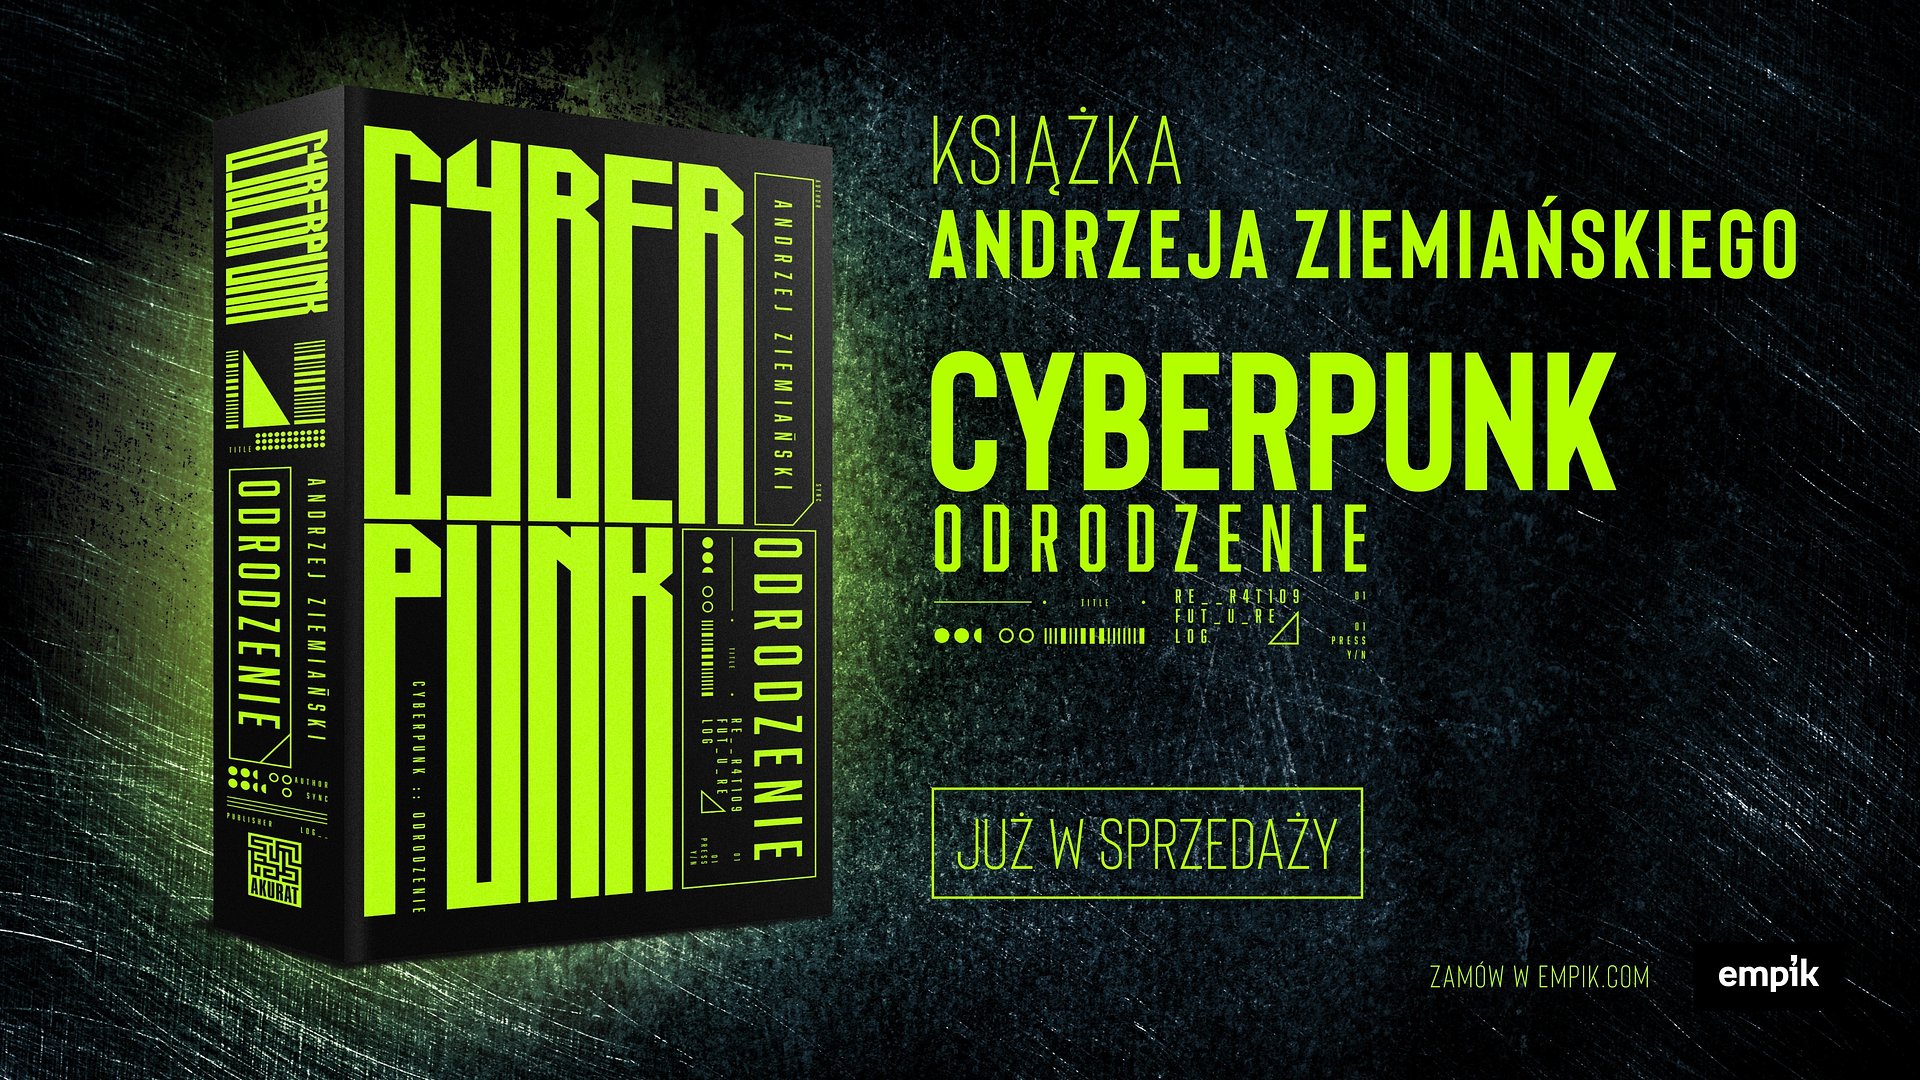 „Cyberpunk. Odrodzenie”, czyli powieść osadzona w futurystycznym uniwersum, już w księgarniach!